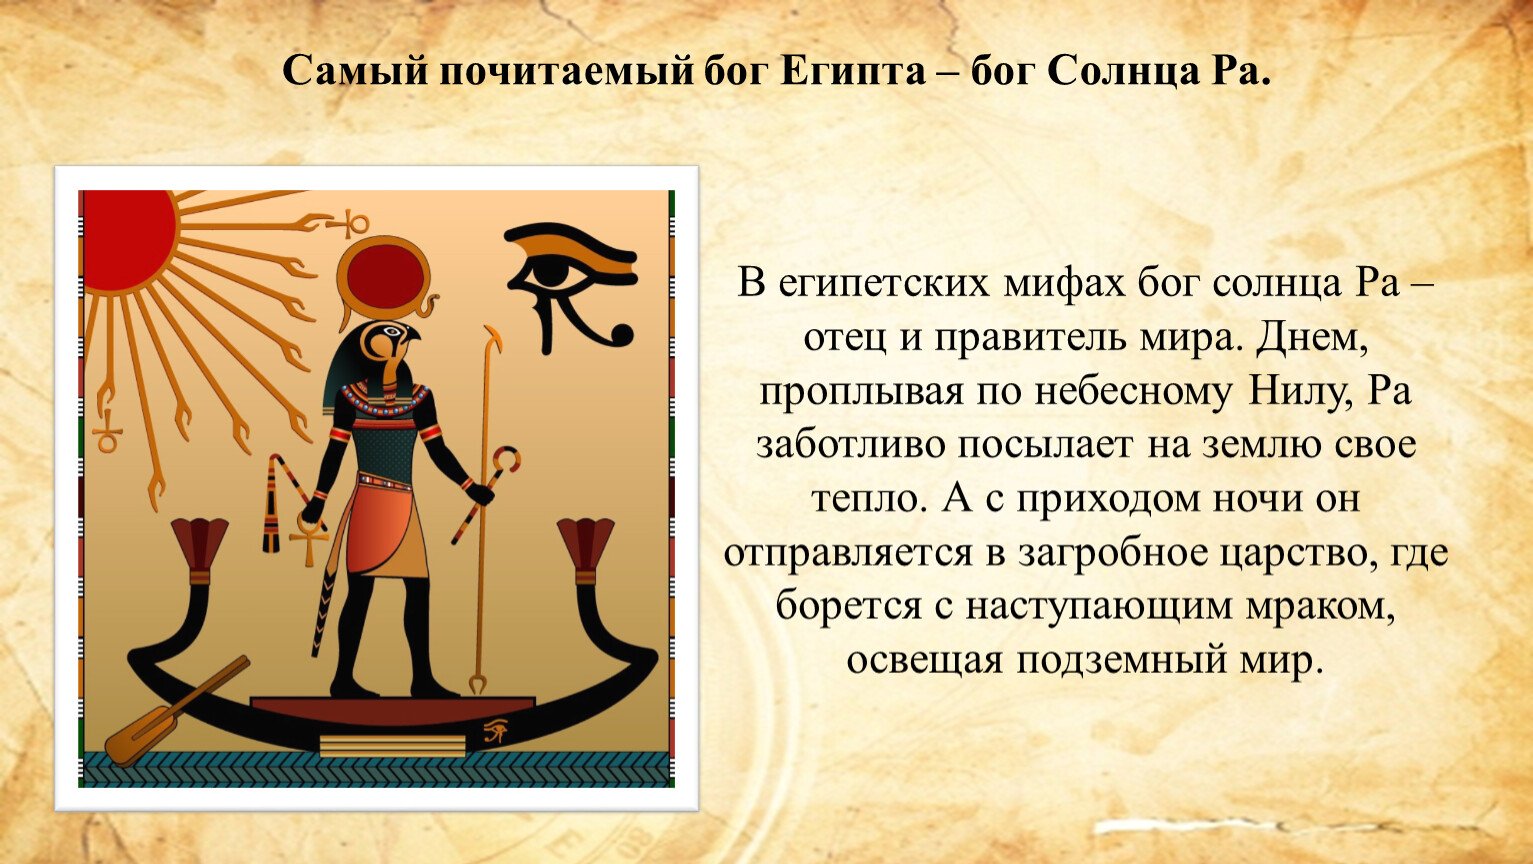 Амон ра это история 5. Мифы древнего Египта Легенда о Боге ра. Бог ра в древнем Египте 5 класс. Бог Амон в древнем Египте. Бог Амон ра в древнем Египте.